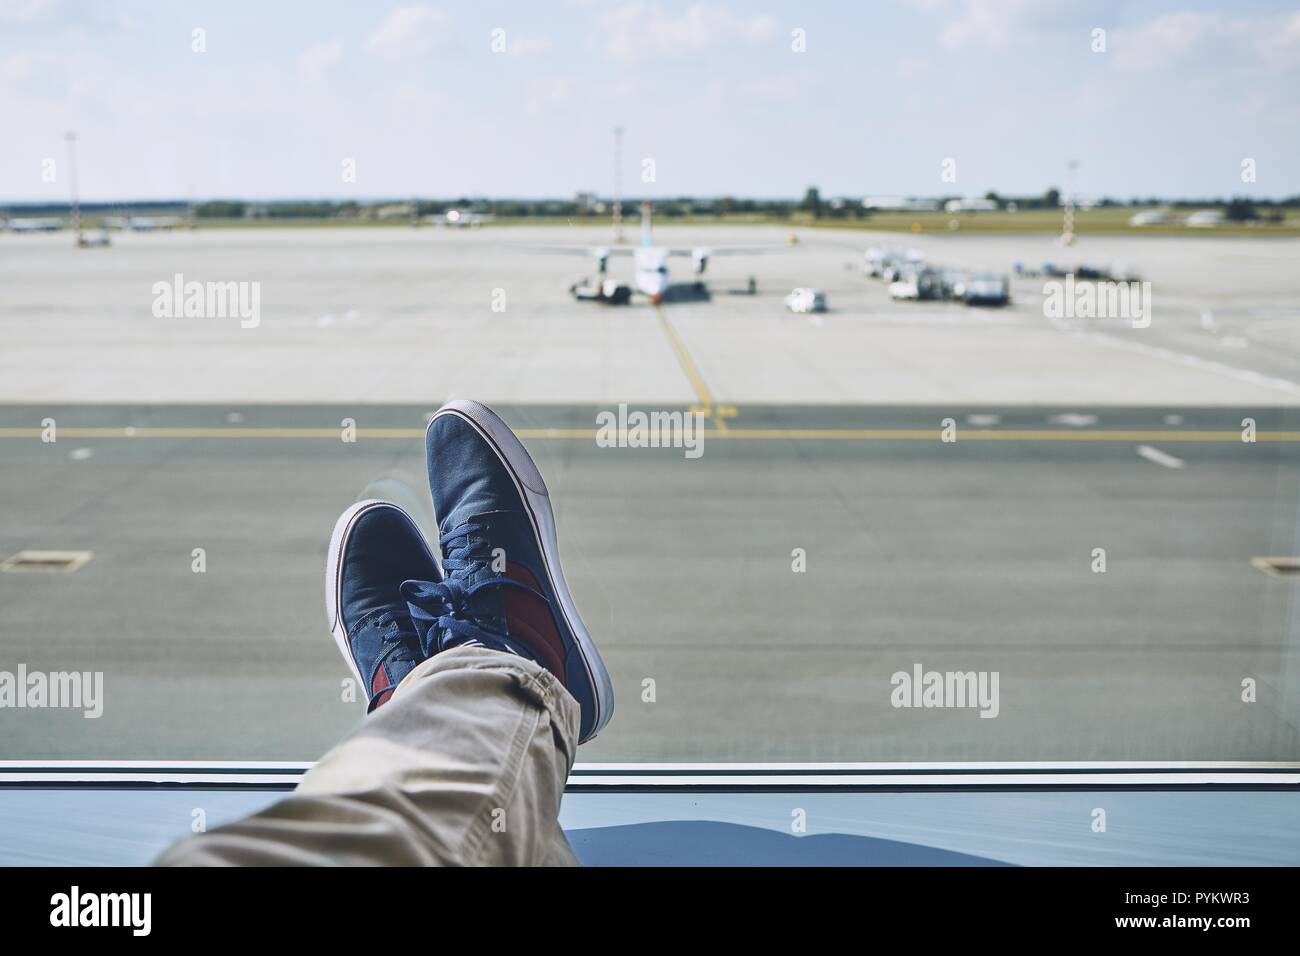 Mann am Flughafen warten. Persönliche Perspektive von Reisenden aus dem Fenster auf den Rollwegen und Start- und Landebahn. Stockfoto